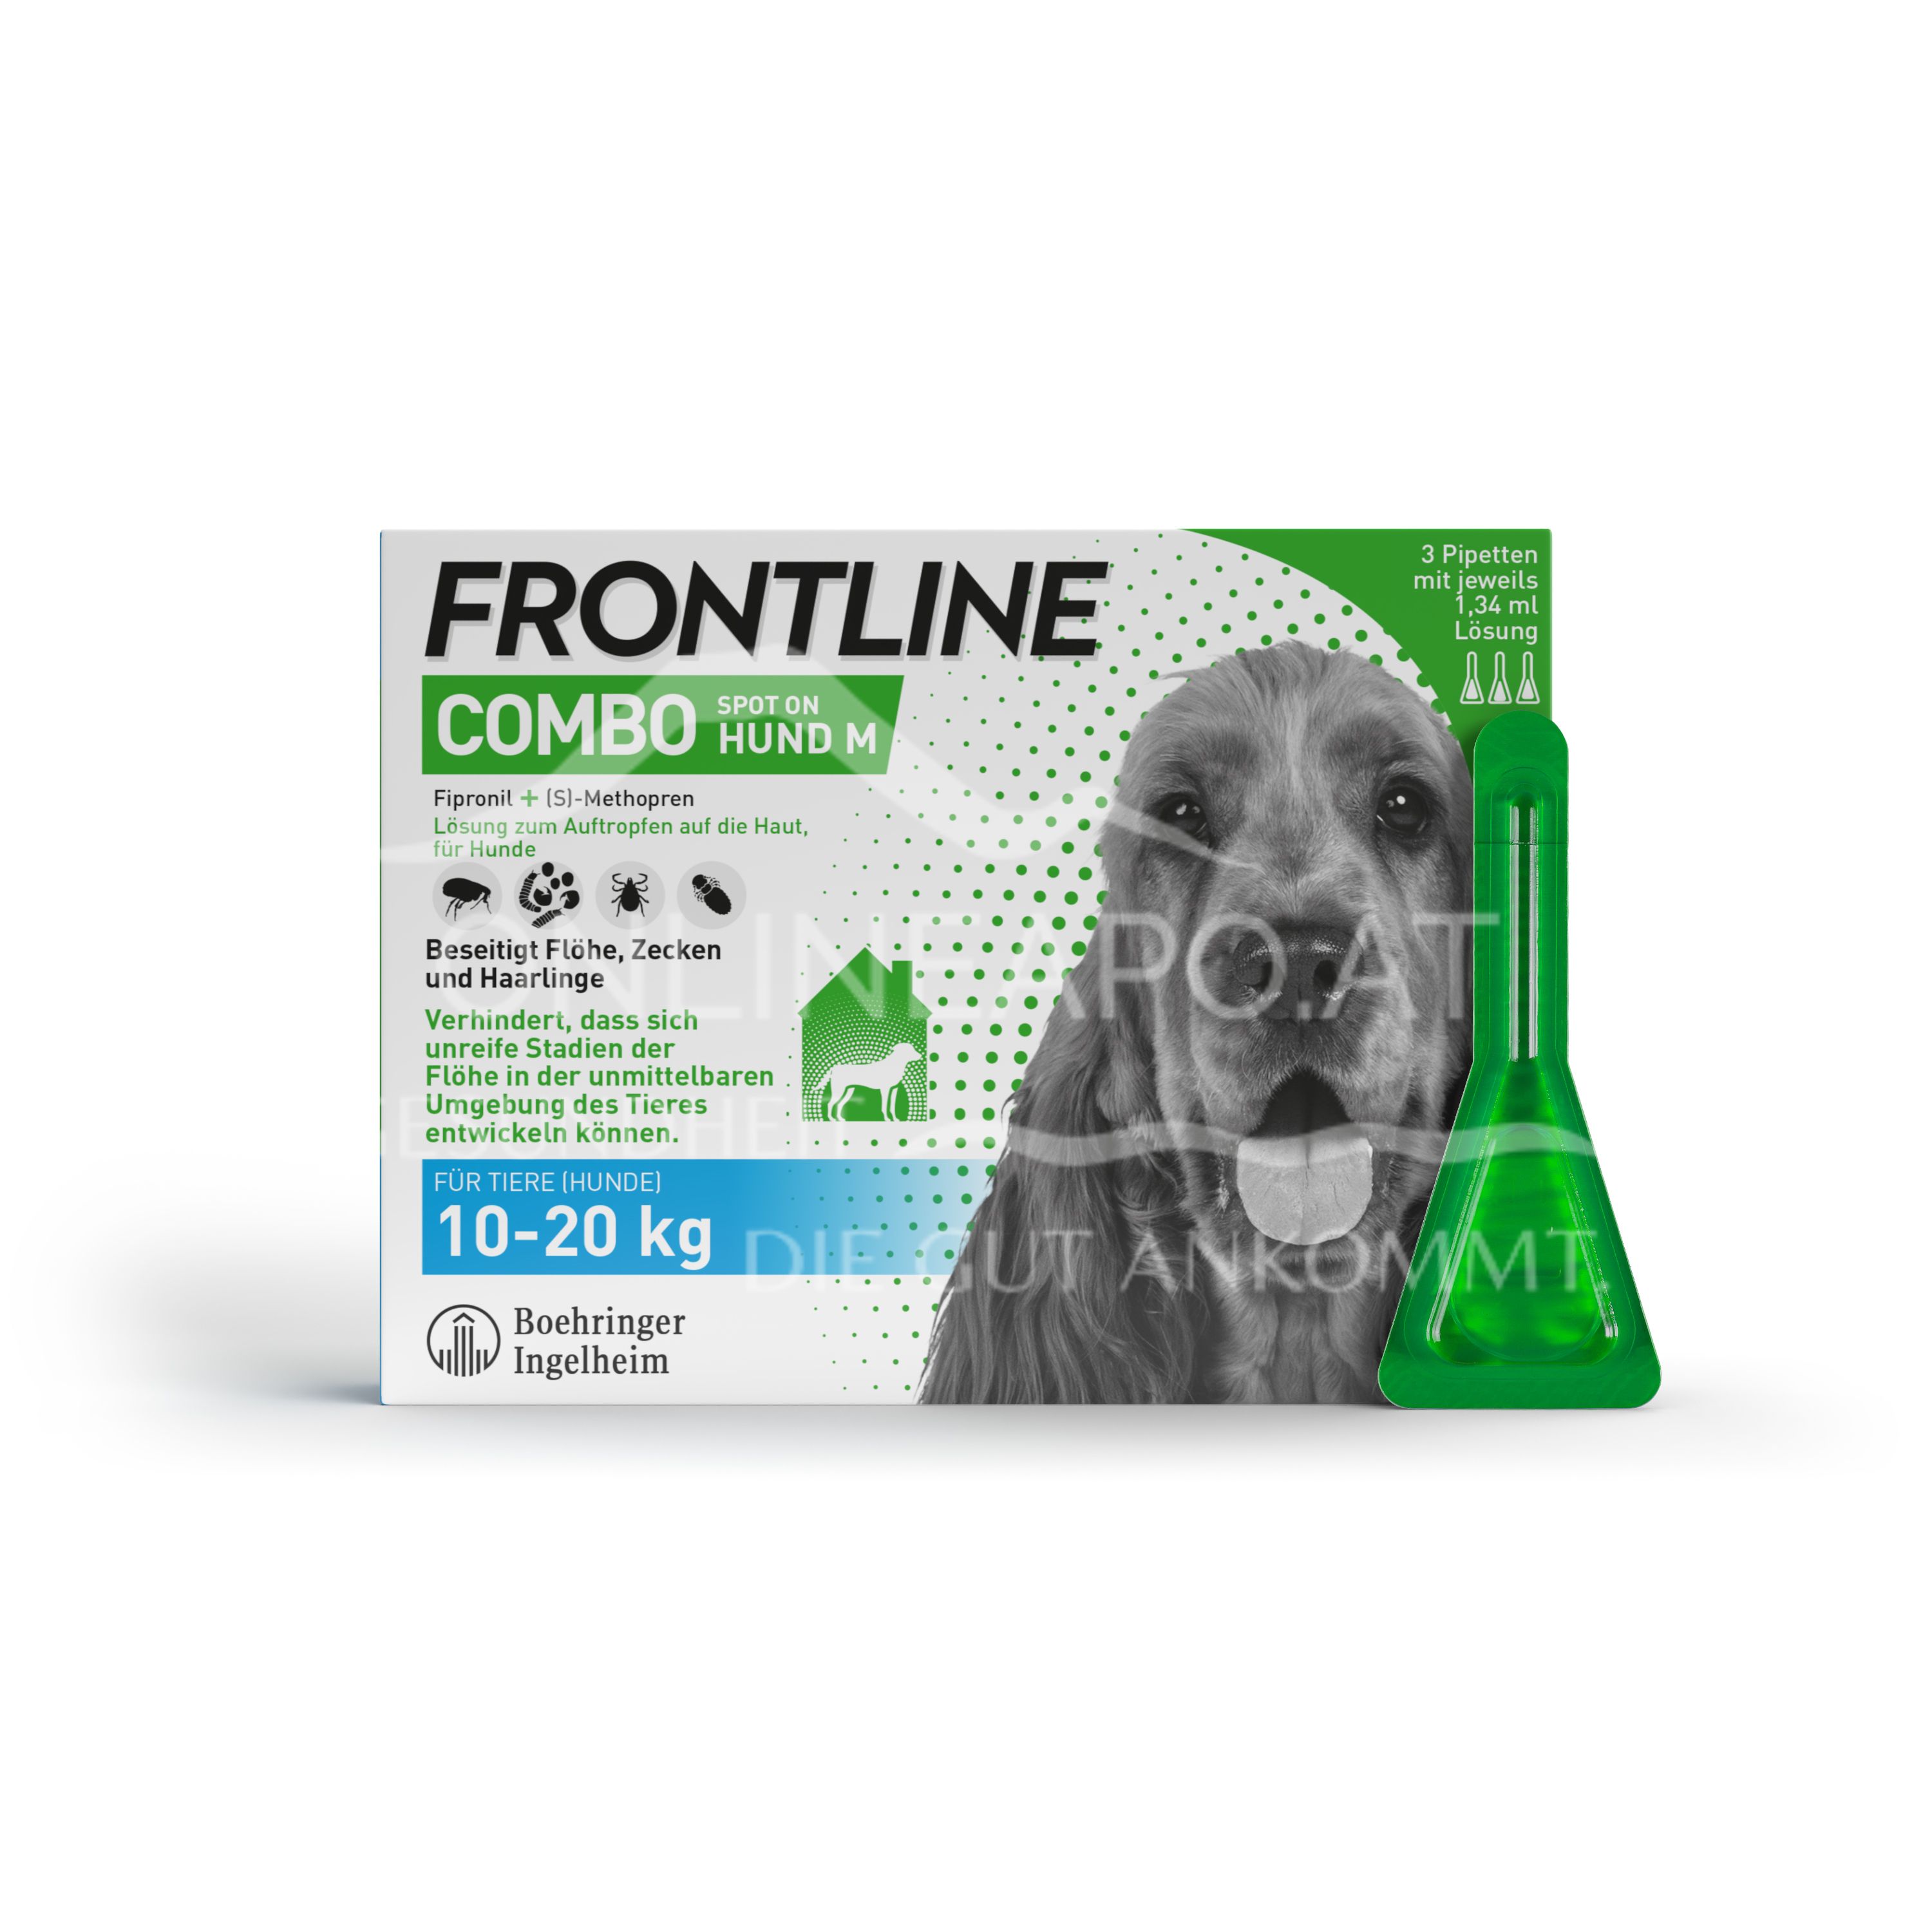 Frontline Combo Spot on Hund M Lösung zum Auftropfen auf die Haut 10 - 20 kg